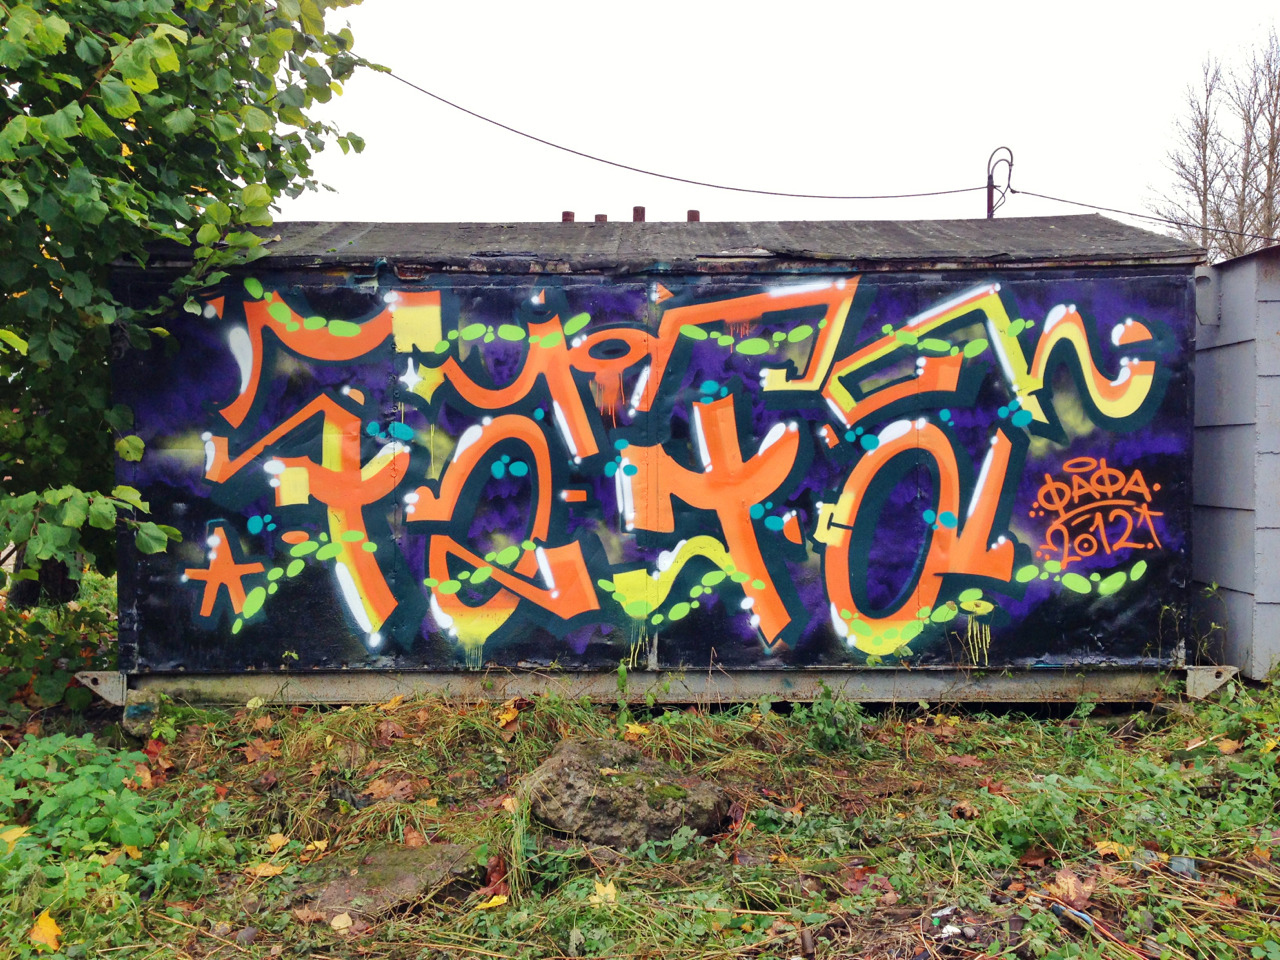 Fafa graffiti in Shlisselburg